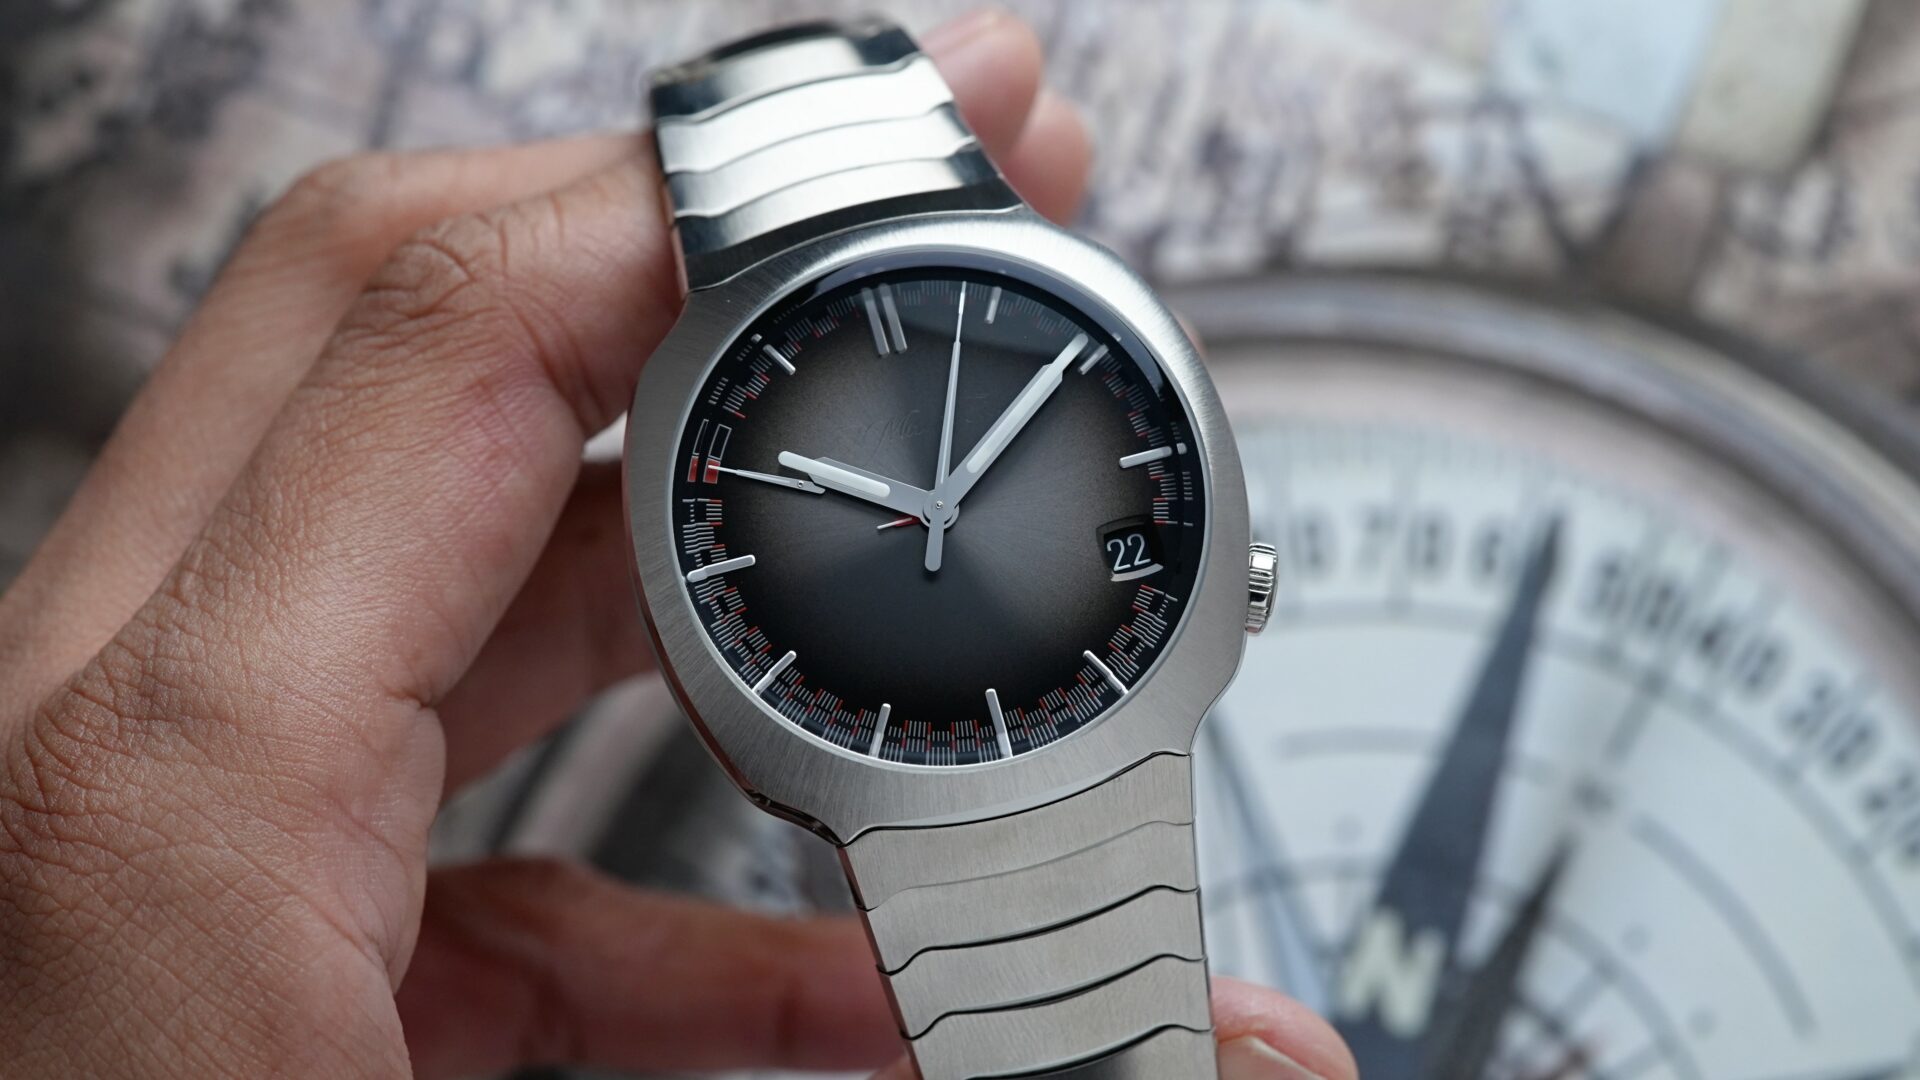 H.Moser & Cie. Streamliner Perpetual Calendar 6812-1200 watch being held in hand.